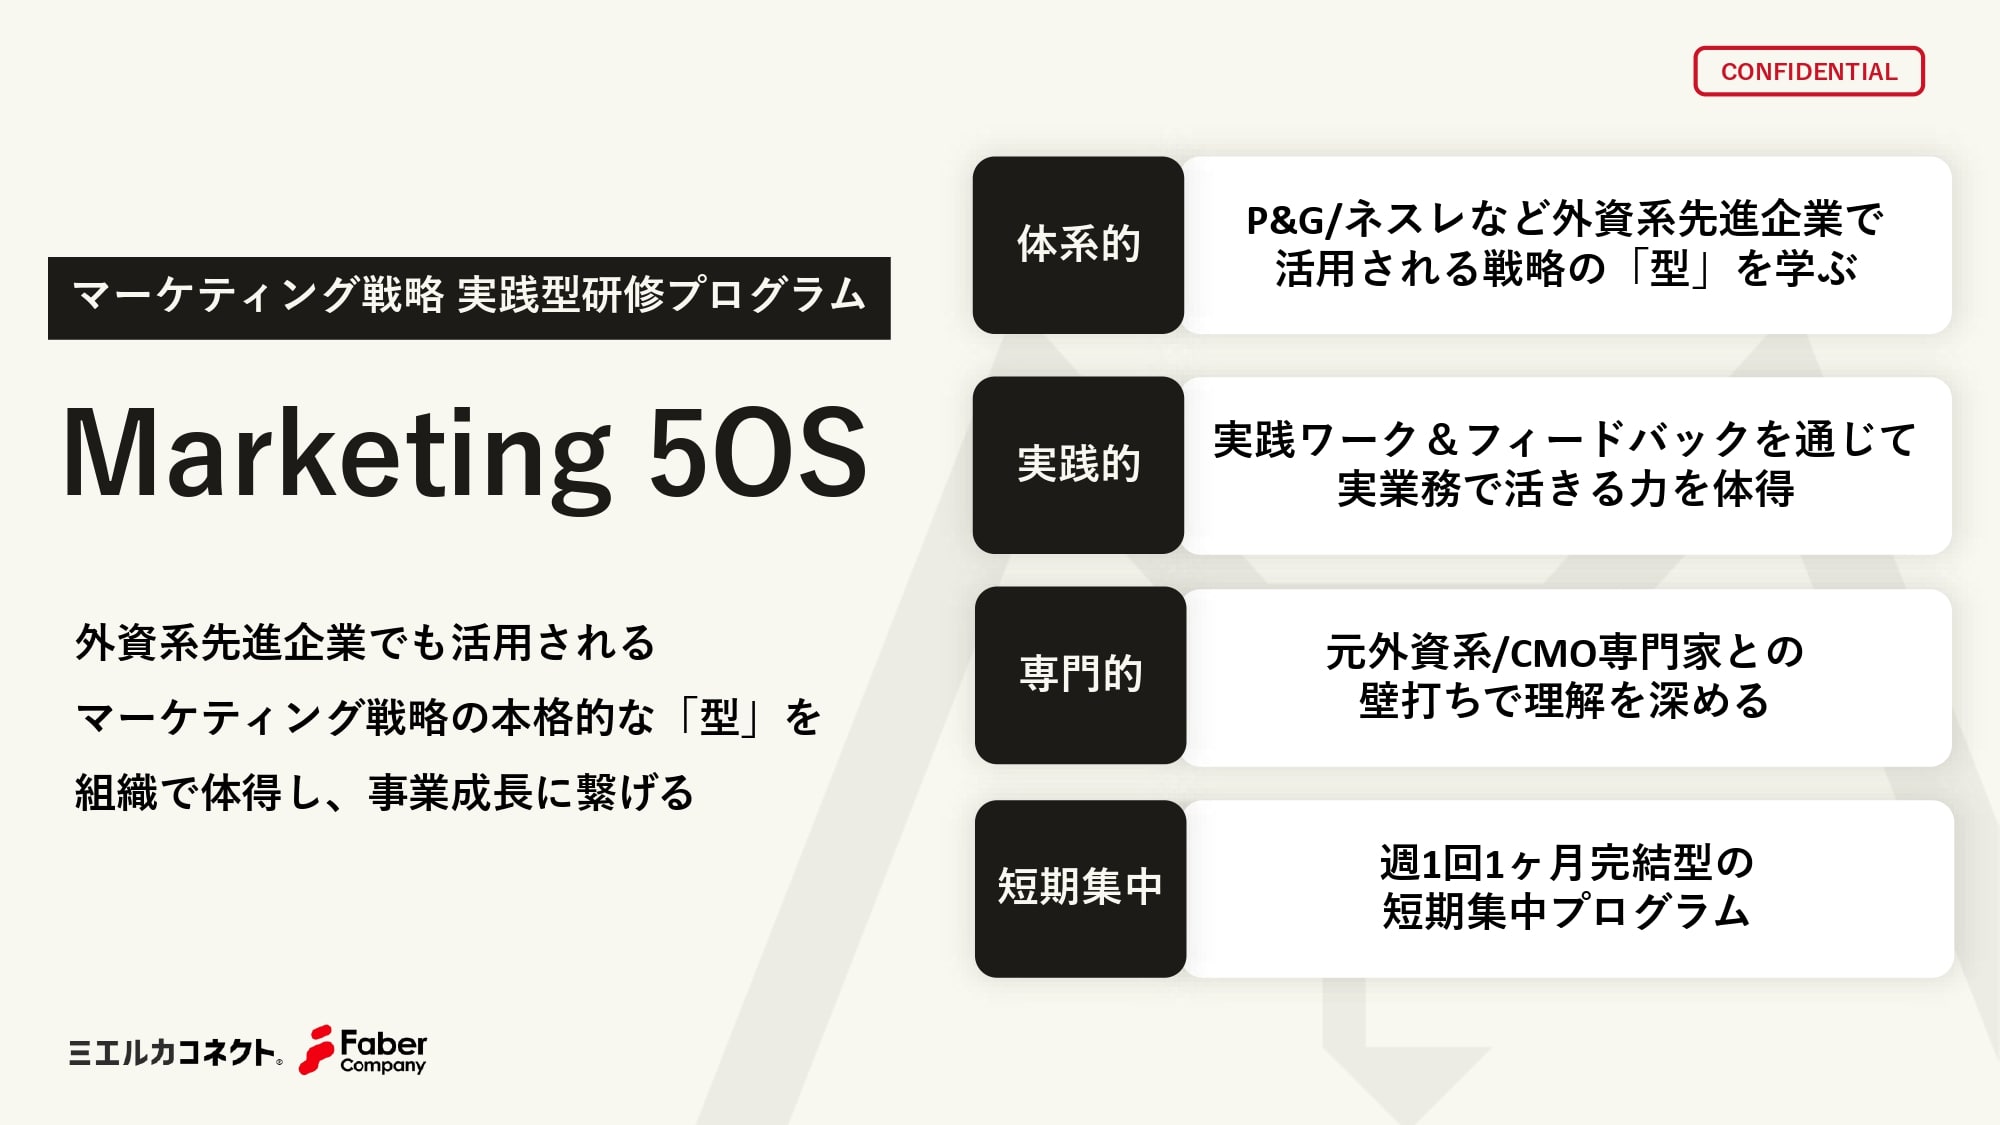 マーケティング戦略実践型研修プログラム【Marketing 5OS】詳細資料 ページ